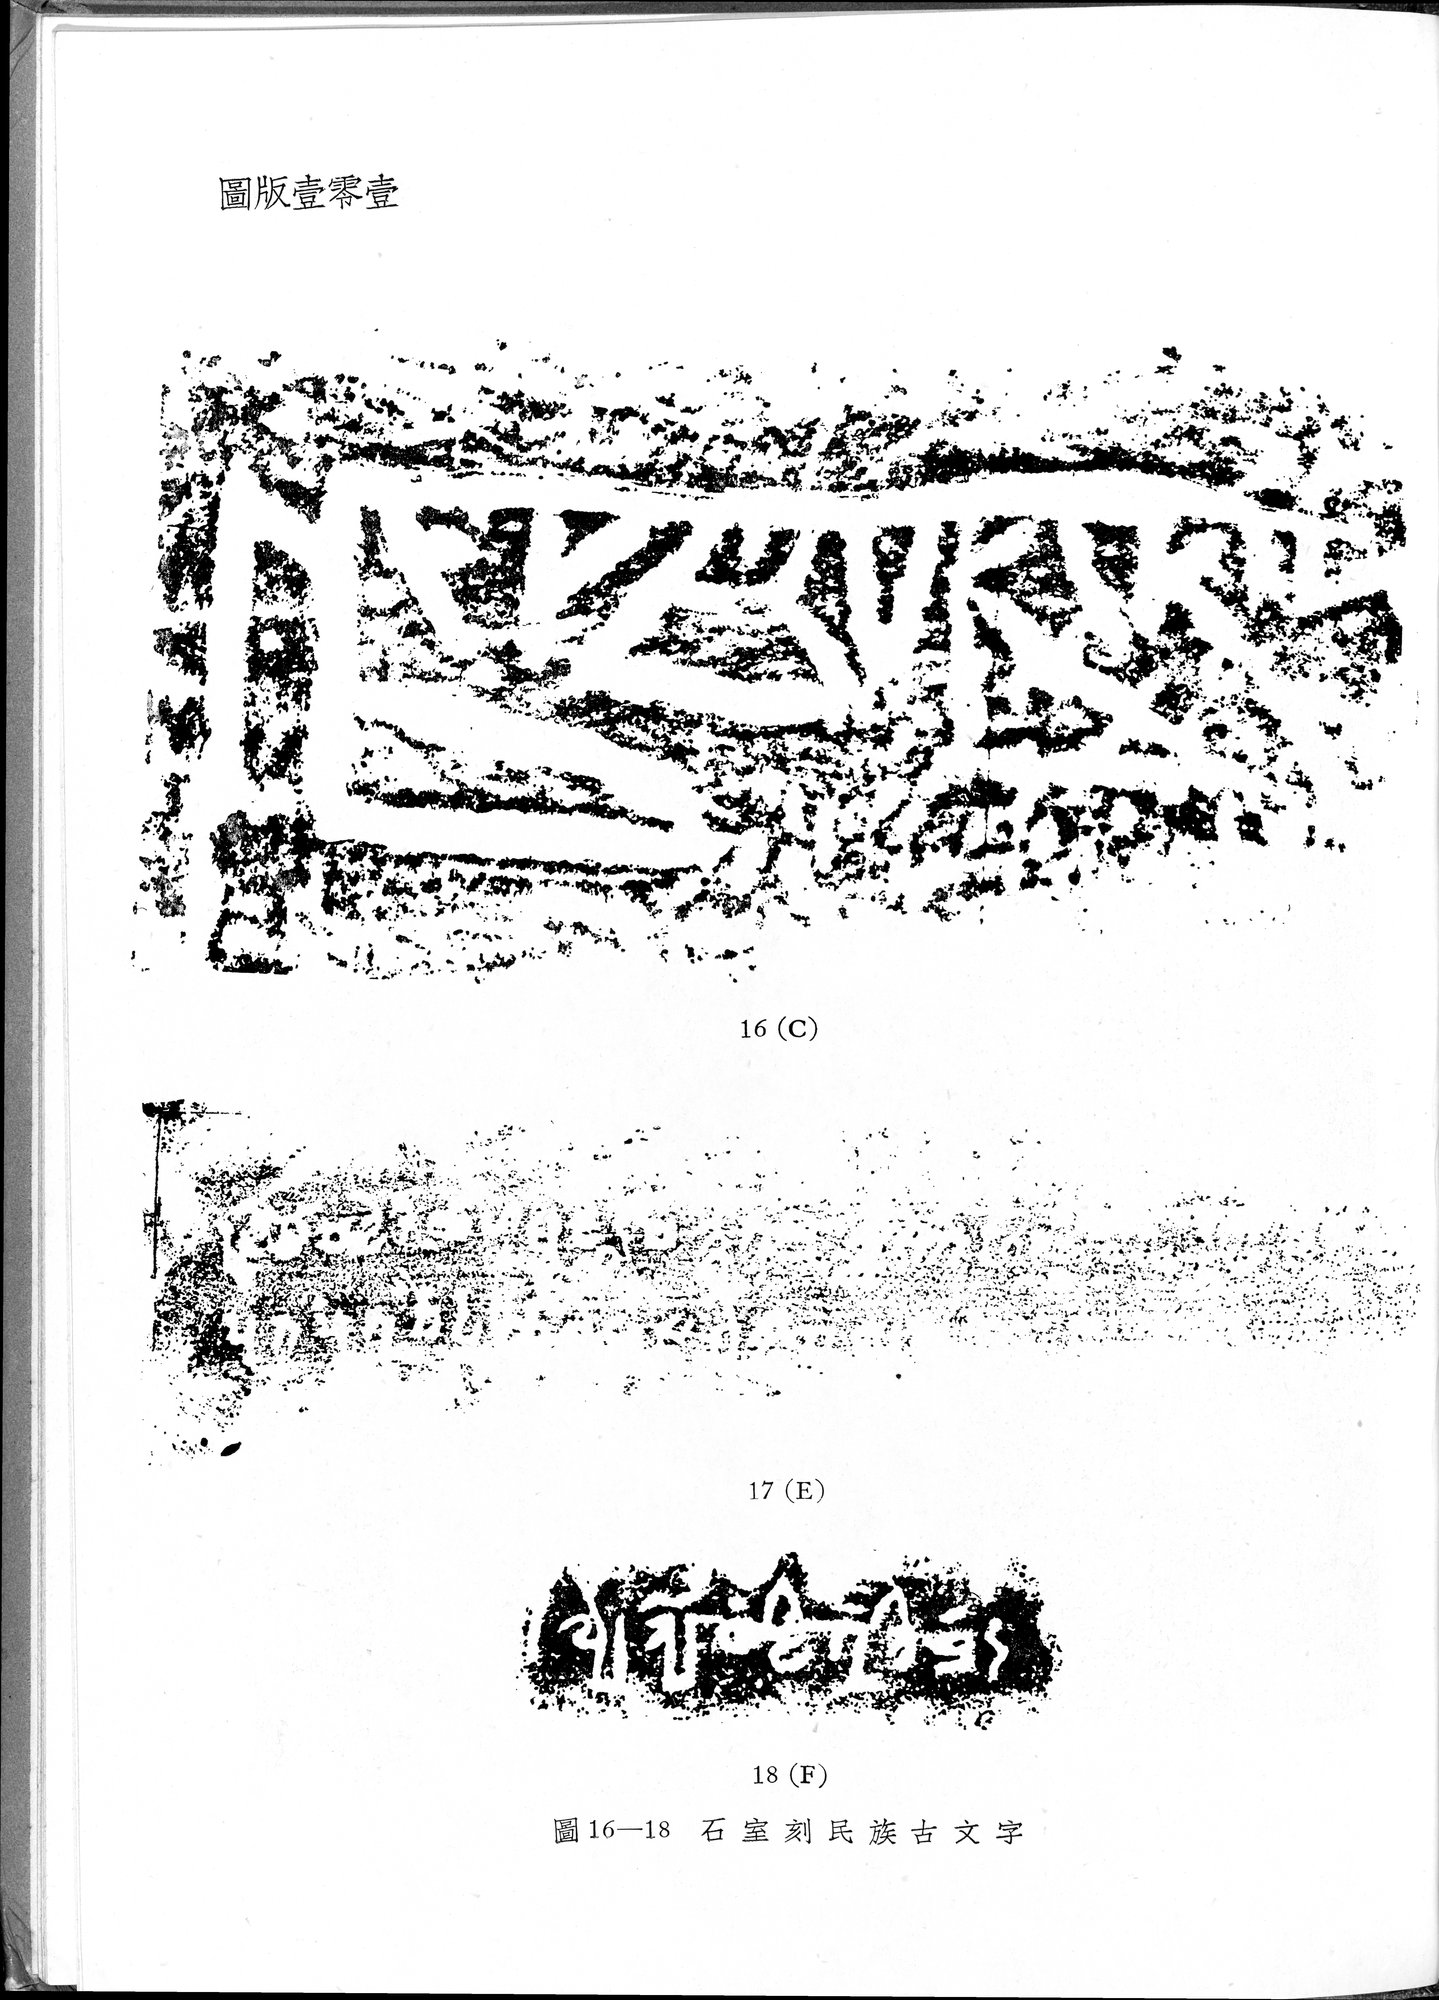 塔里木盆地考古記 : vol.1 / Page 335 (Grayscale High Resolution Image)